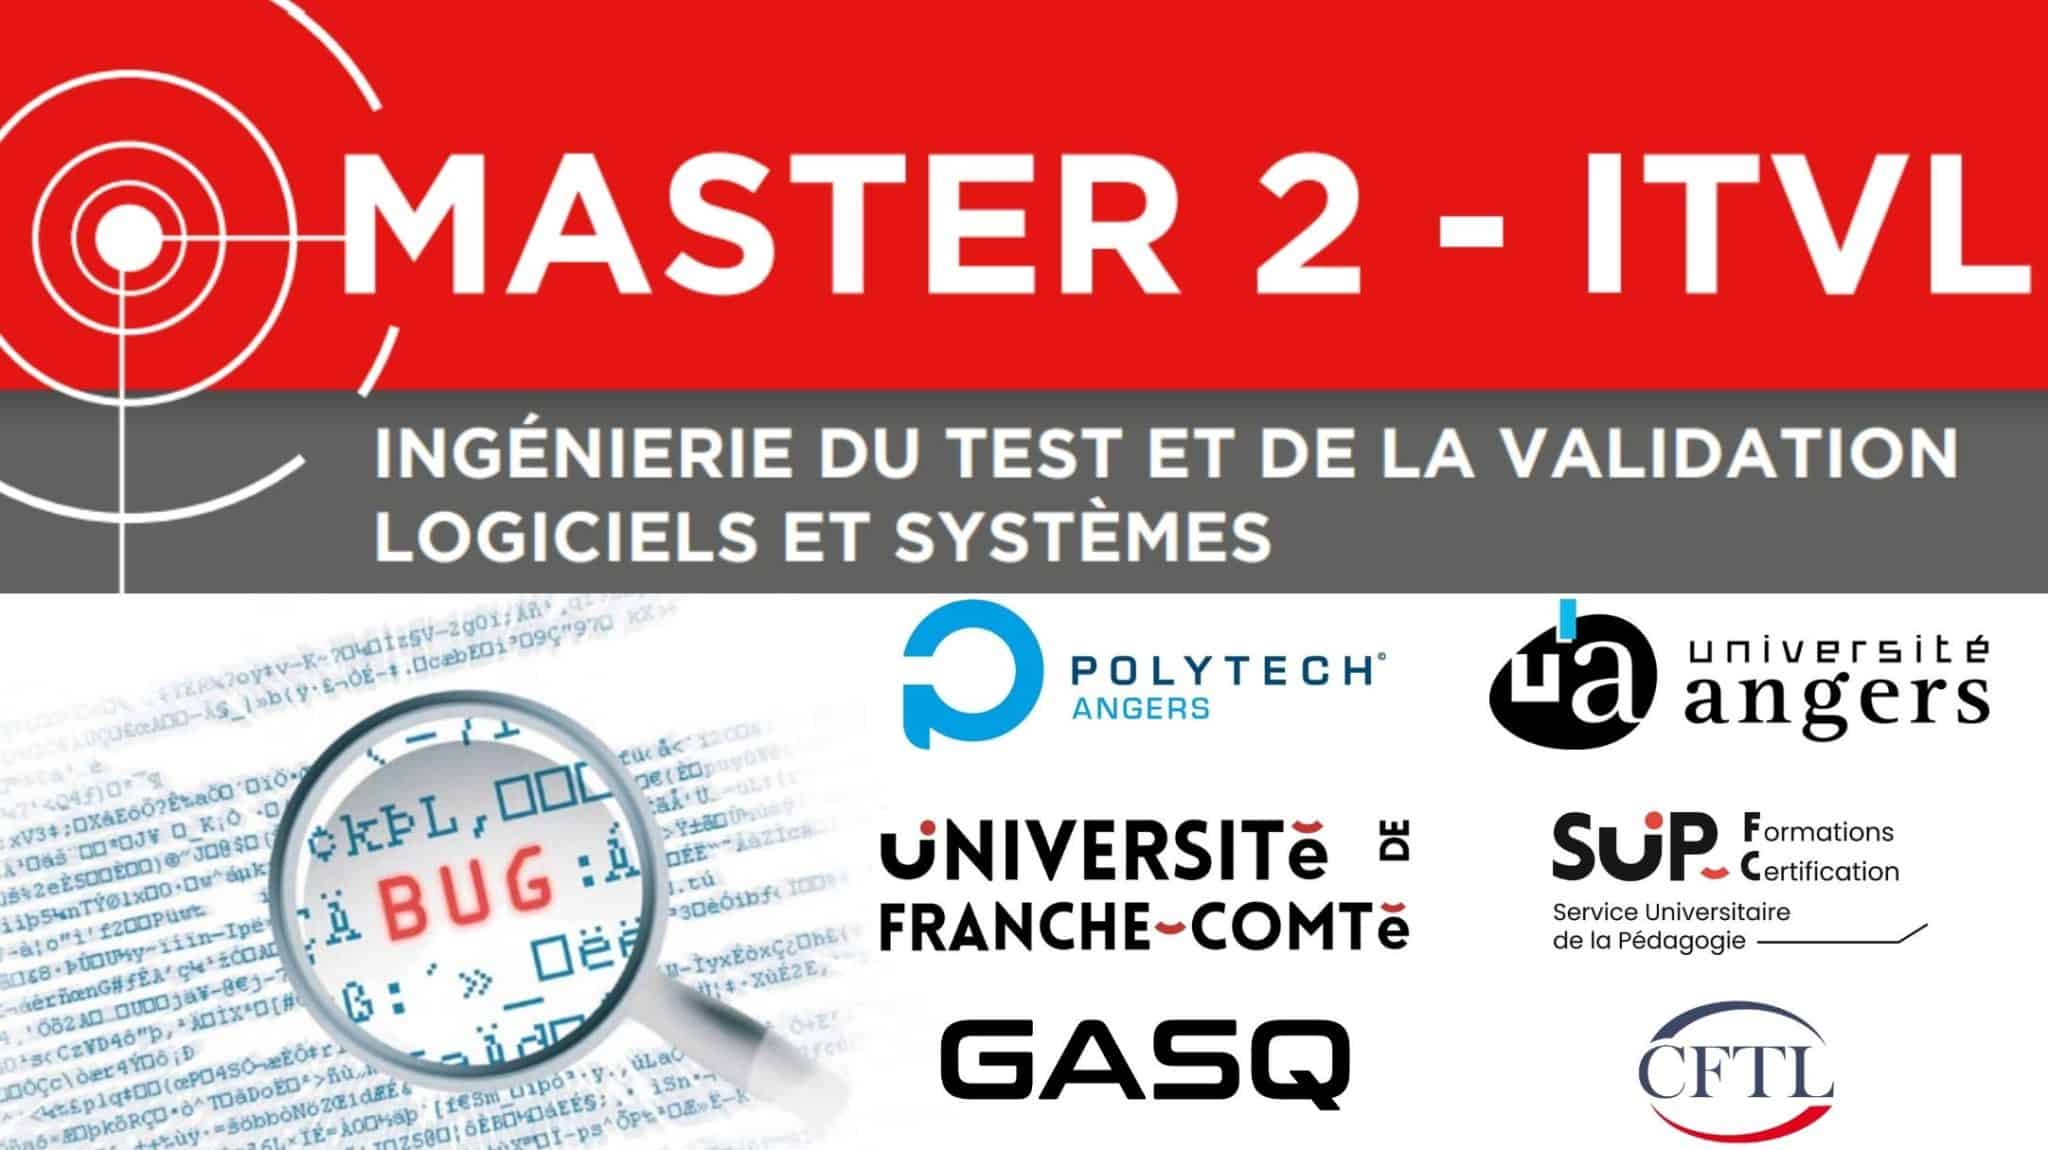 Master 2 ITVL : 1er master diplômant et certifiant en Qualité et Test Logiciel